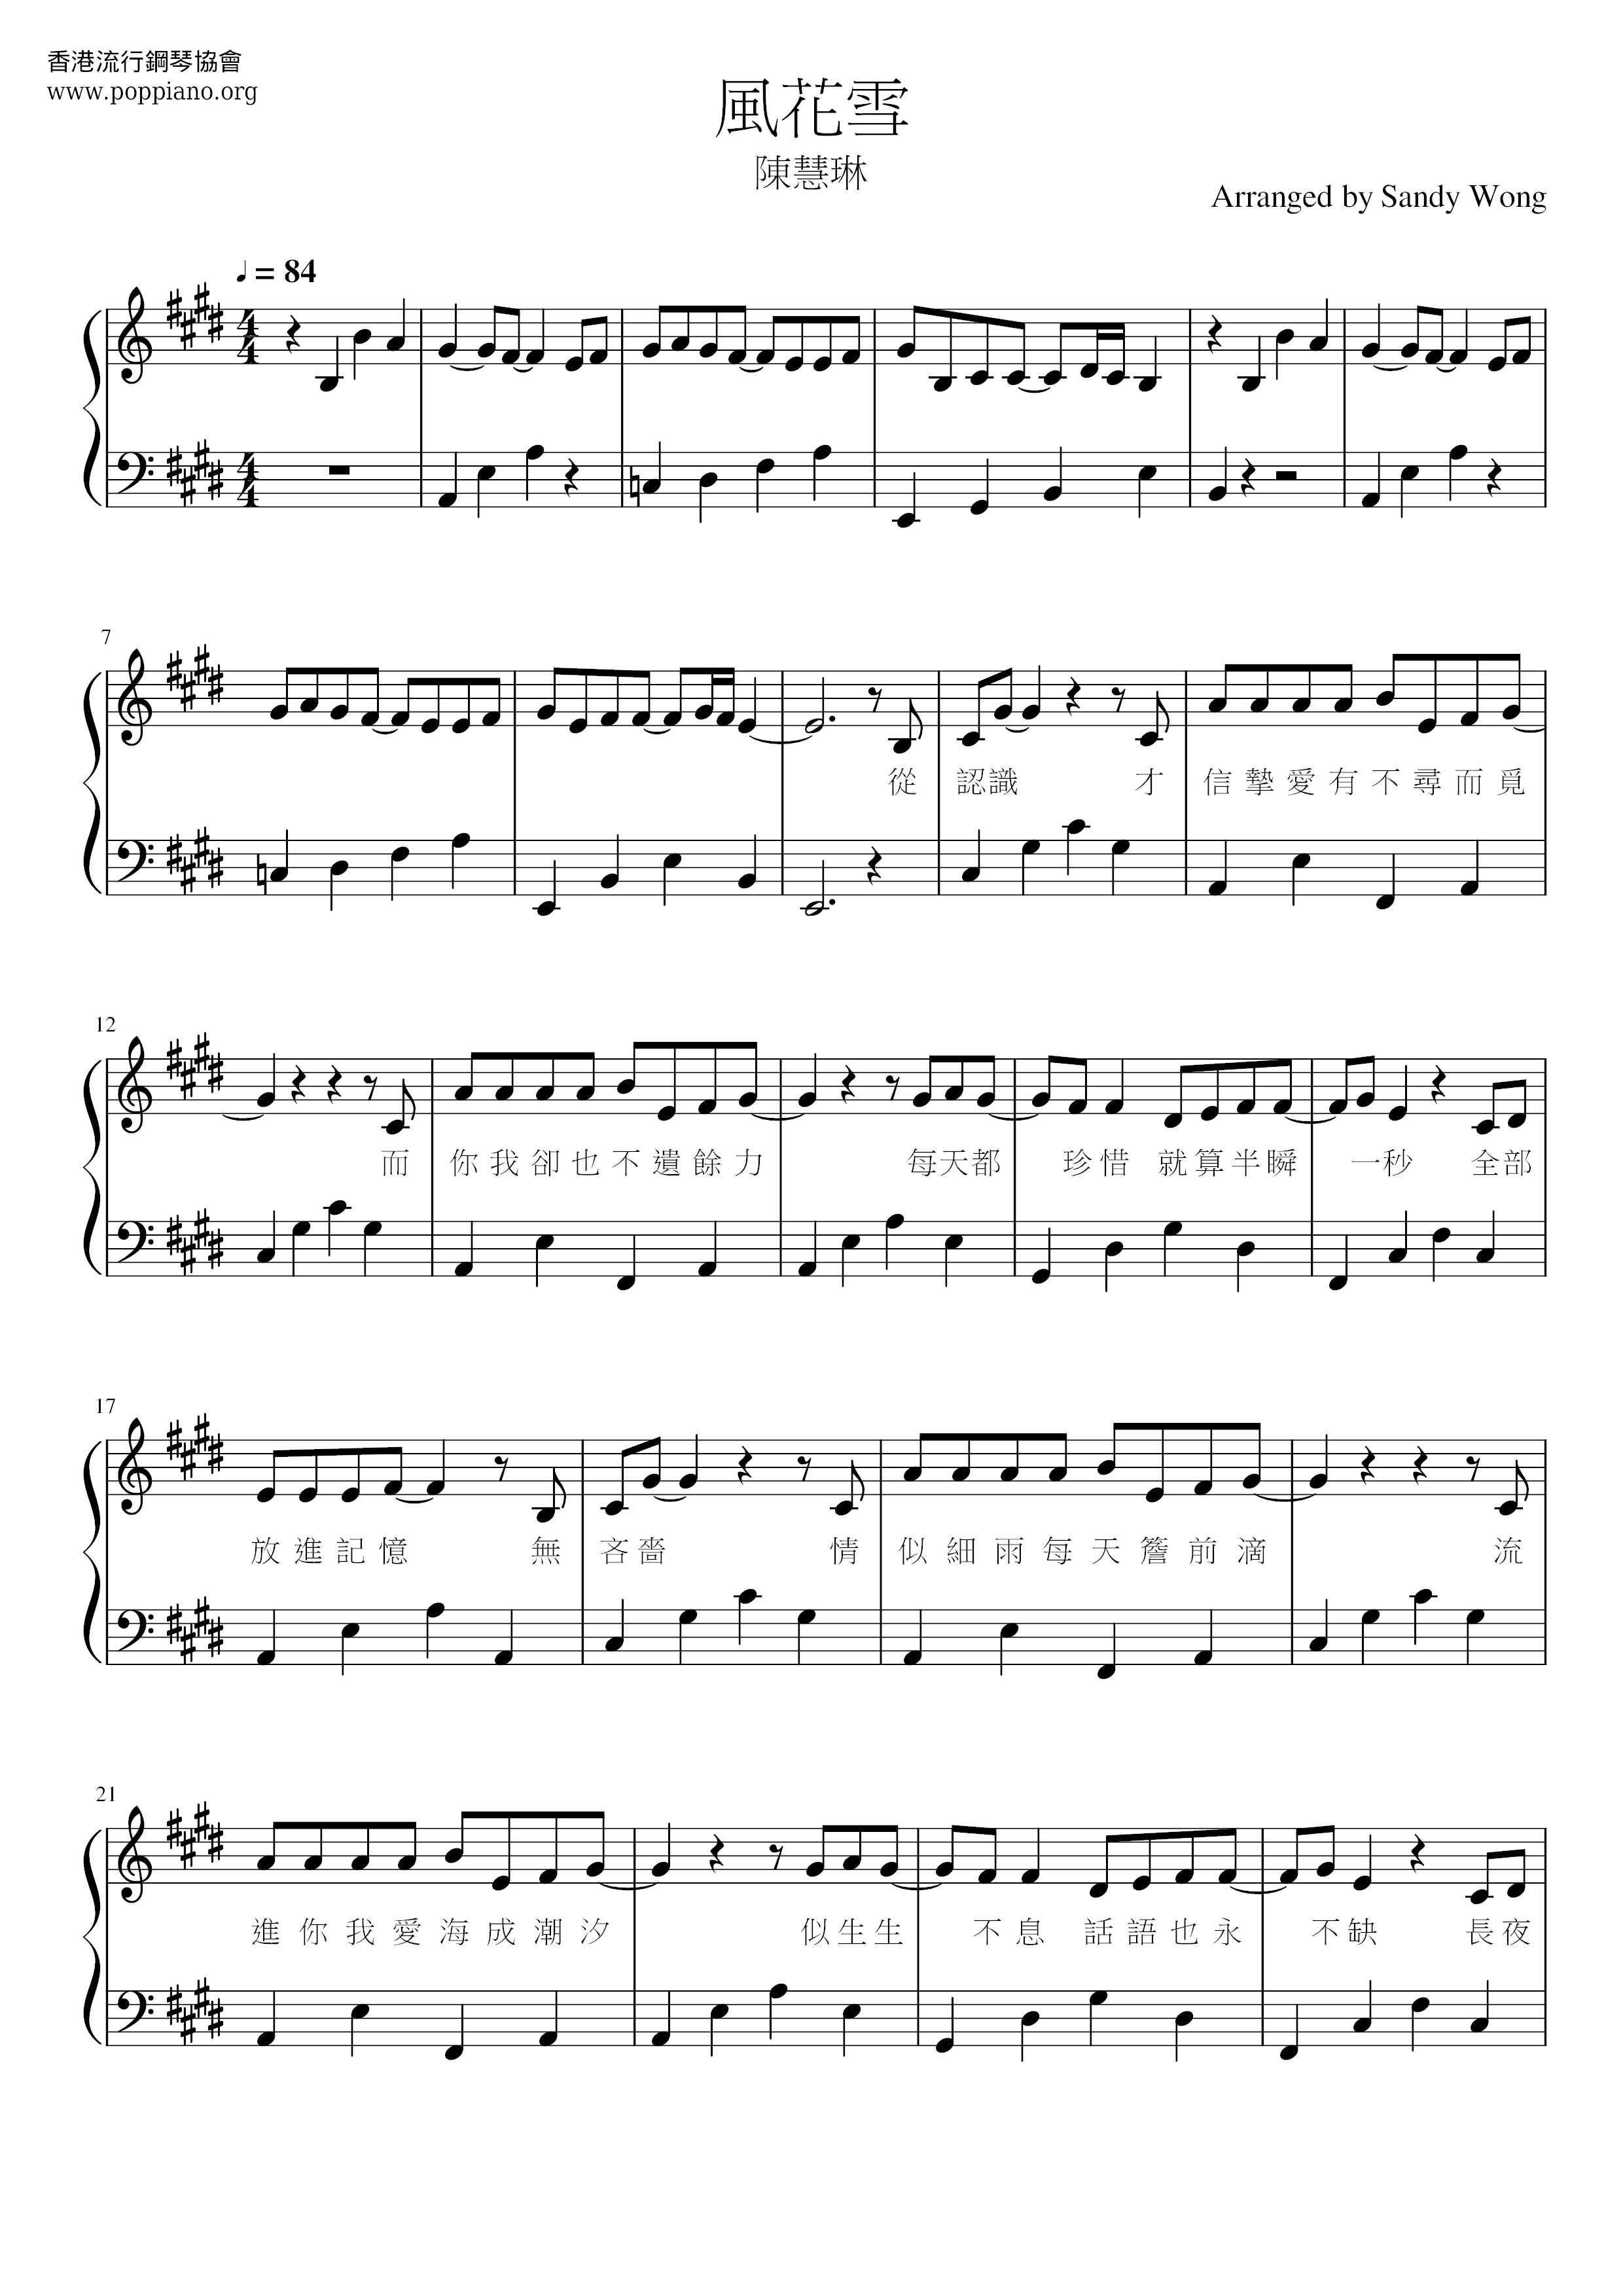 Fenghuaxue Score